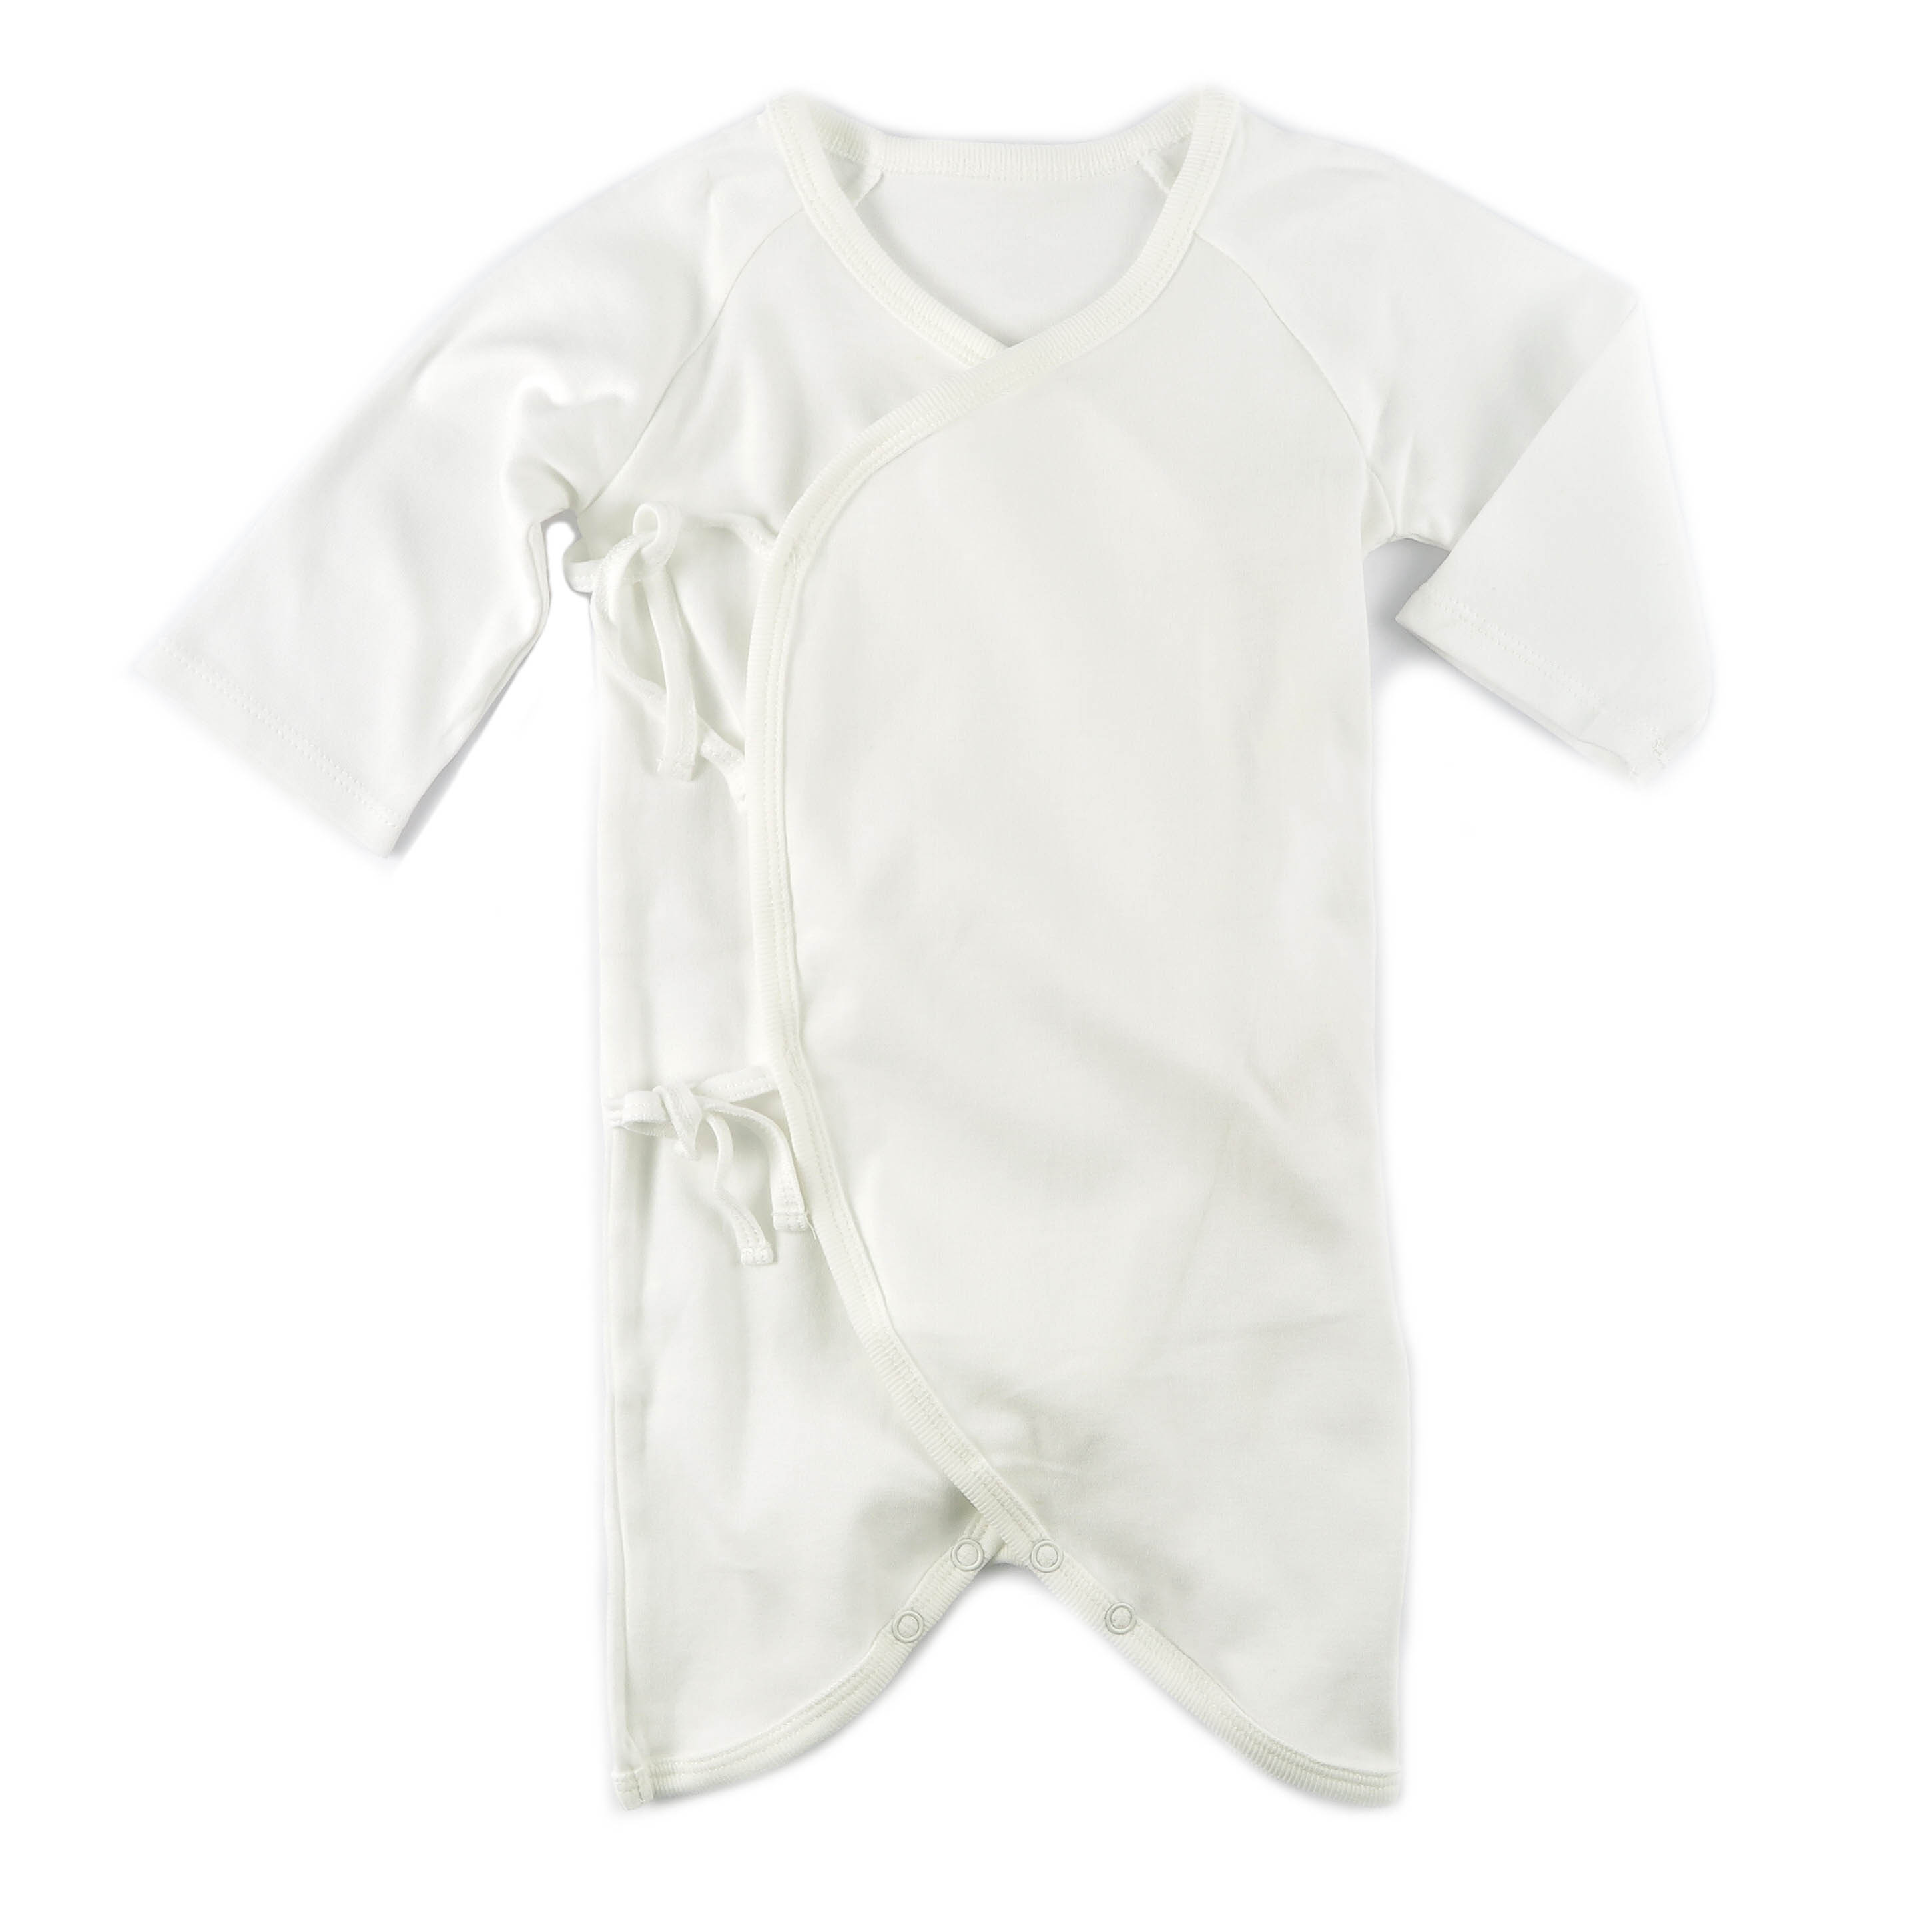 ★菲比朵朵★ 棉葉寶寶嬰兒有機棉長袖蝴蝶衣(白色)